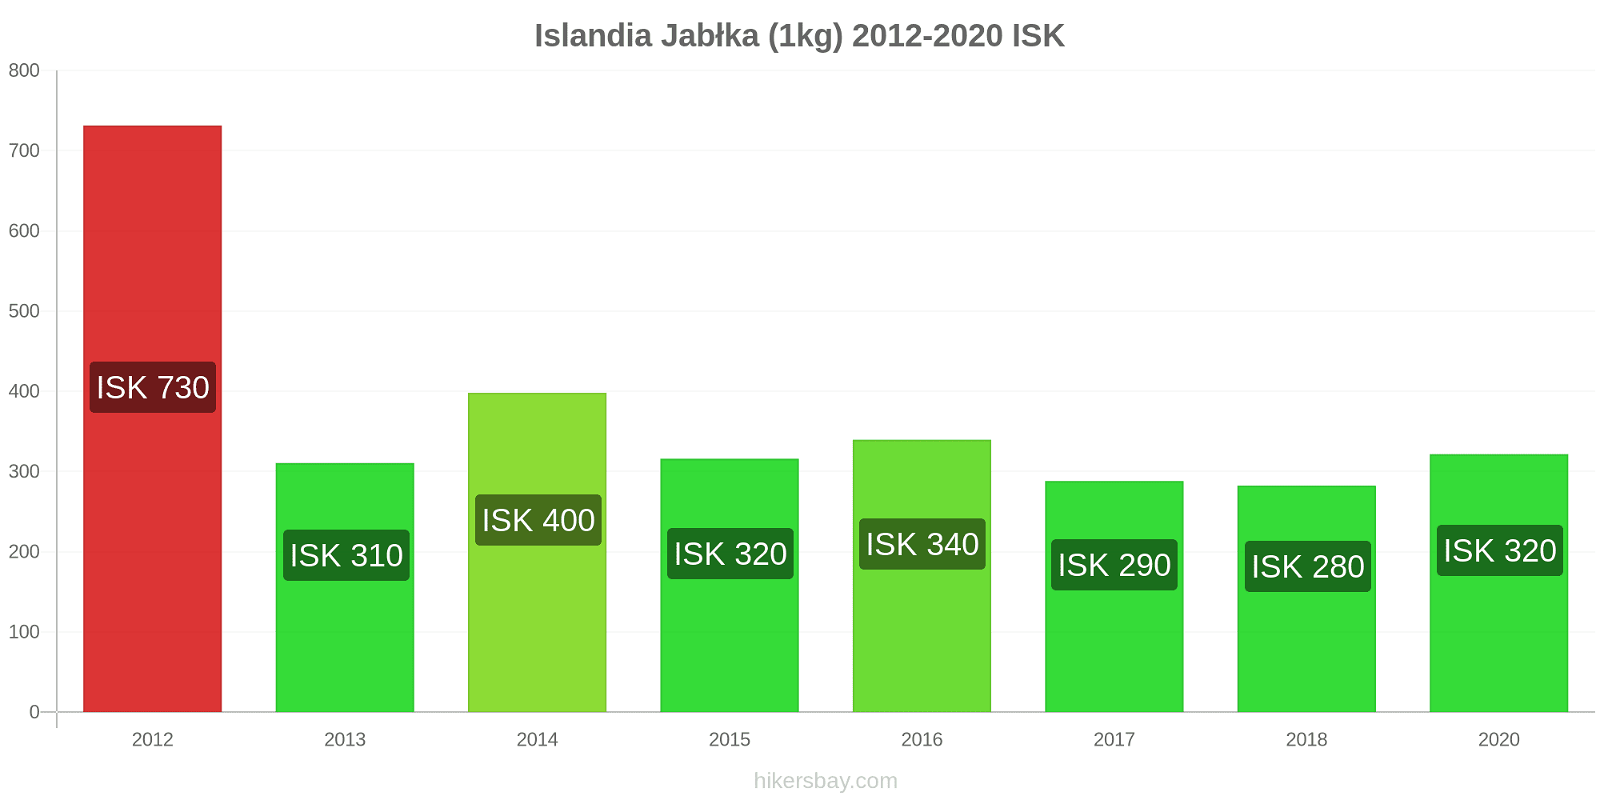 Islandia zmiany cen Jabłka (1kg) hikersbay.com